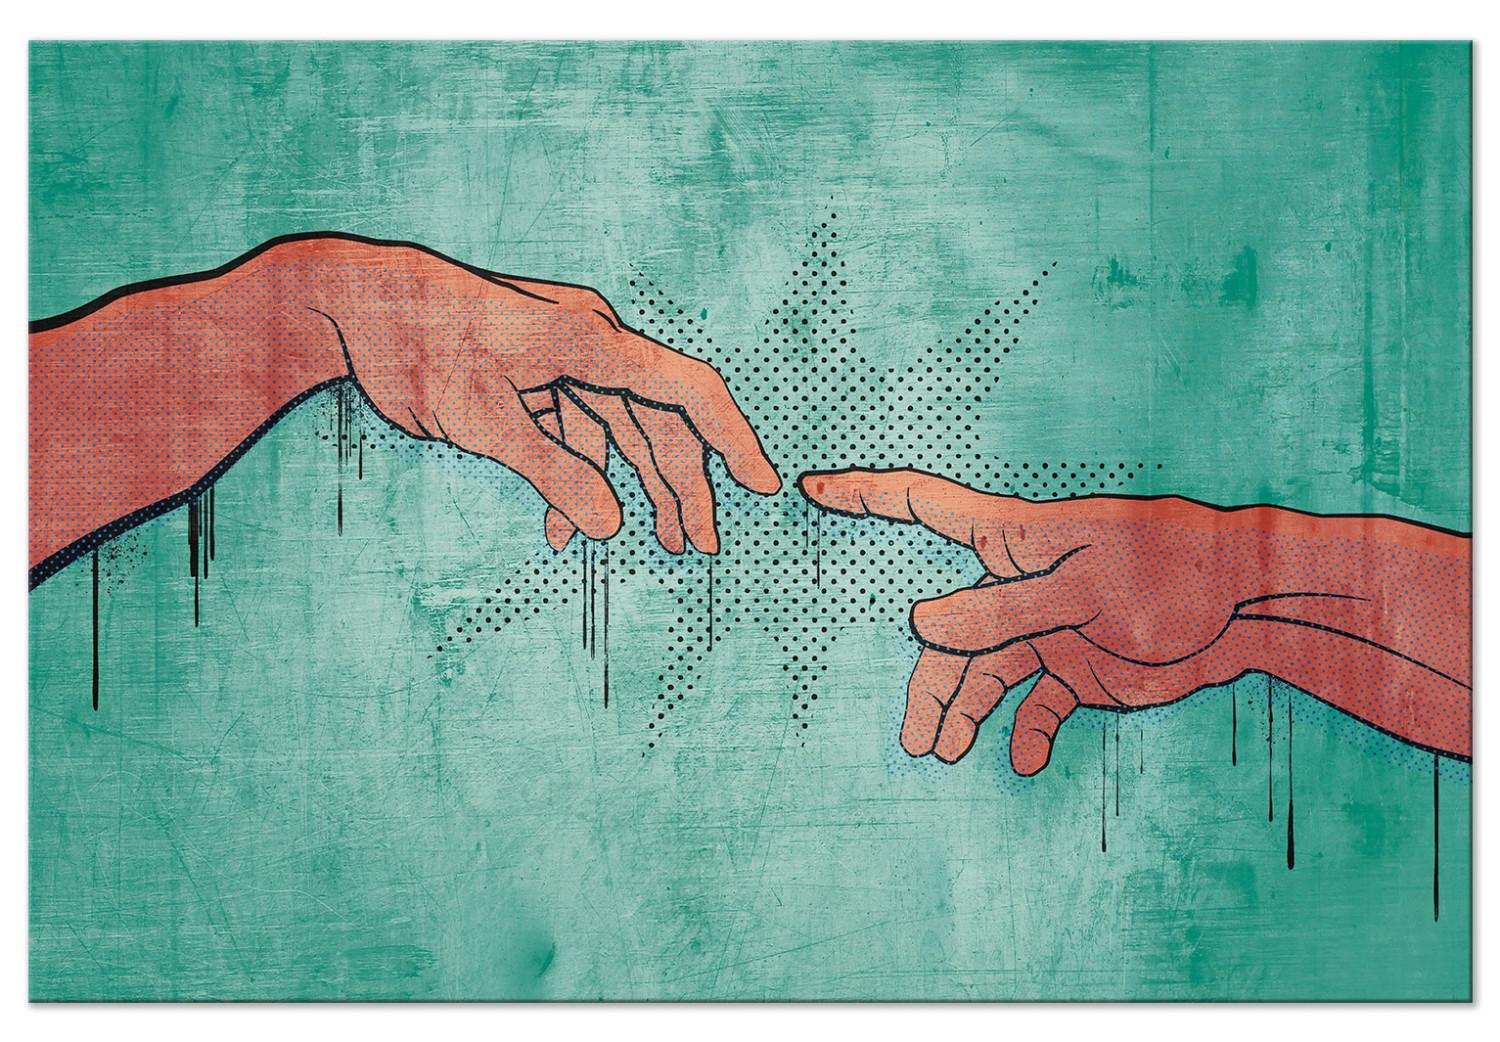 Cuadro Dos manos - gráficos juveniles inspirados en un fresco religioso